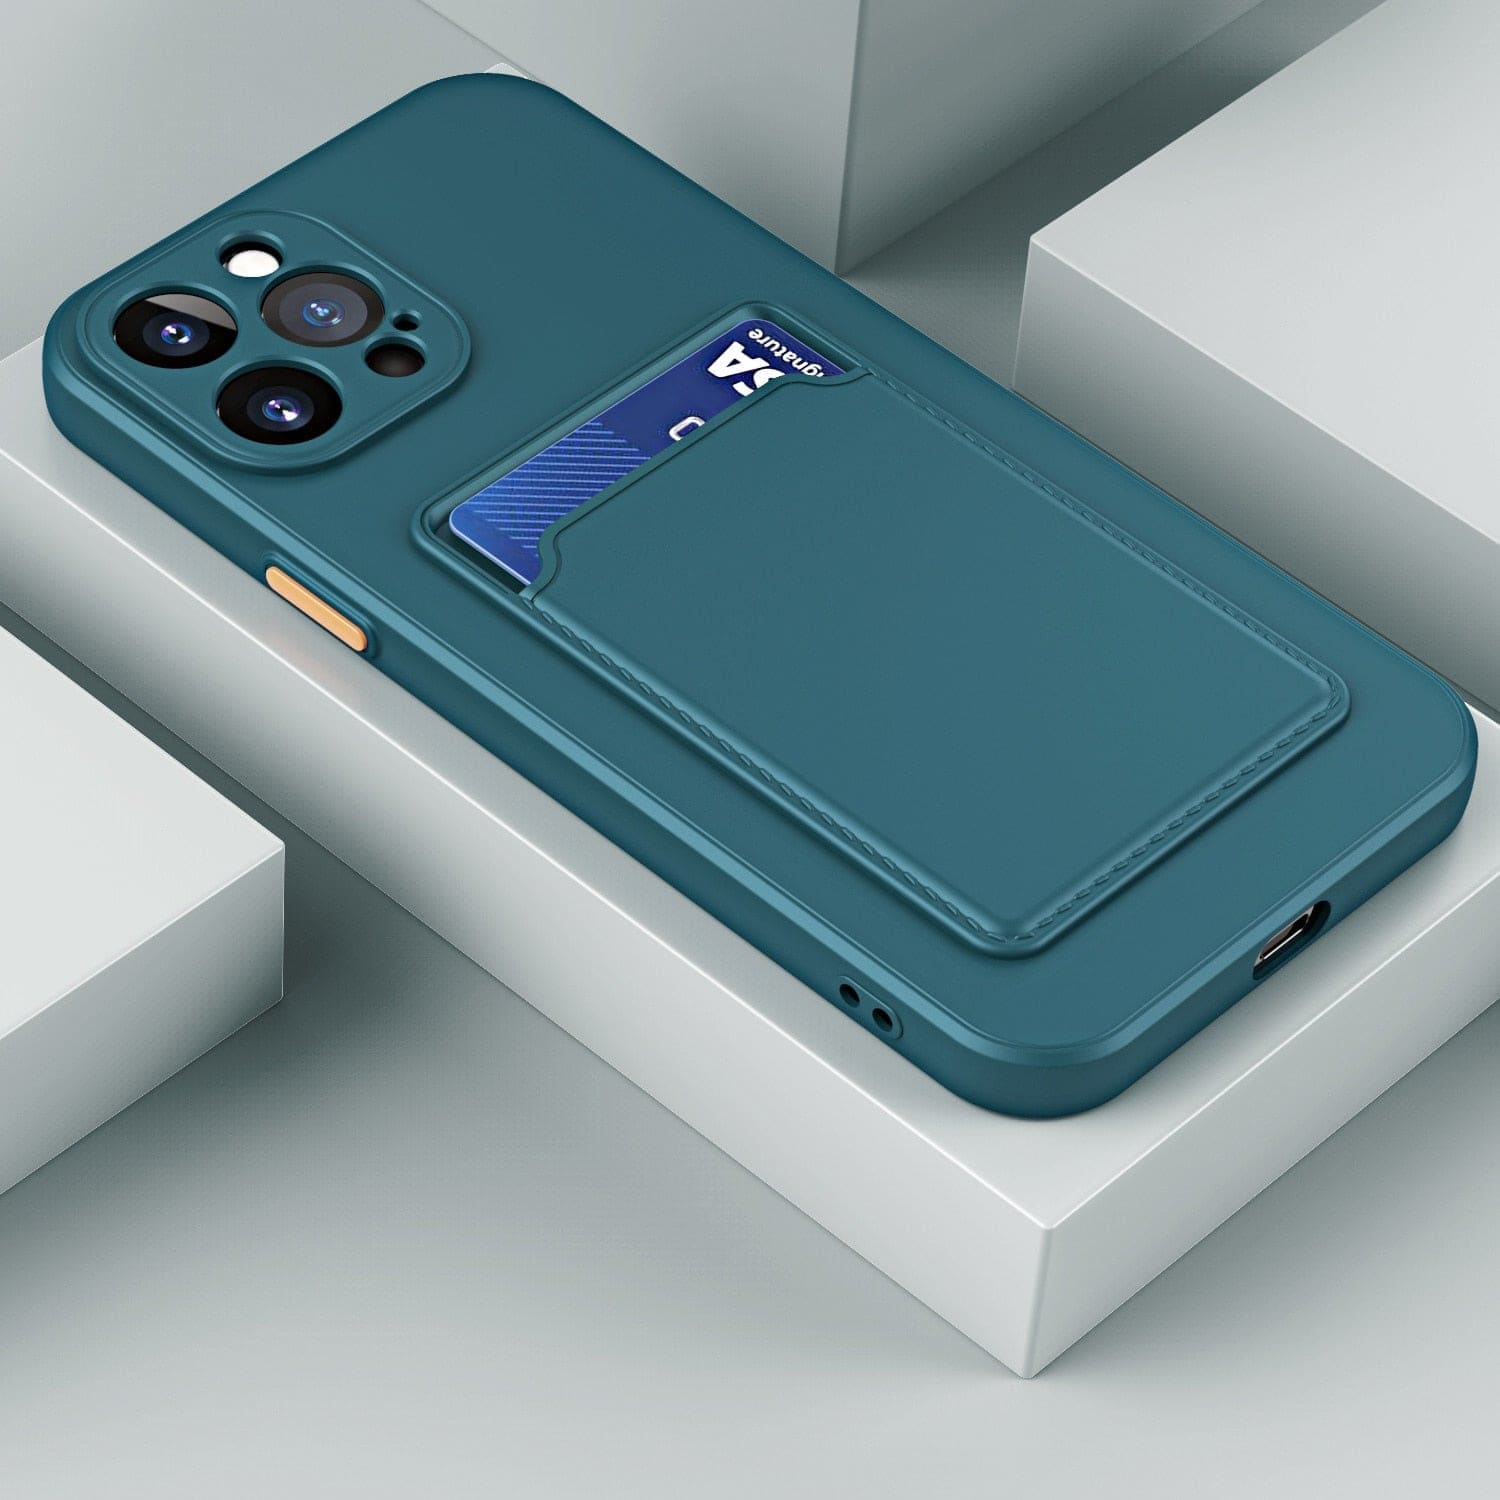 Silikon iPhone Schutzhülle mit Kartenhalter - Dunkelgrün / iPhone 12 mini - iPhone Schutzhülle